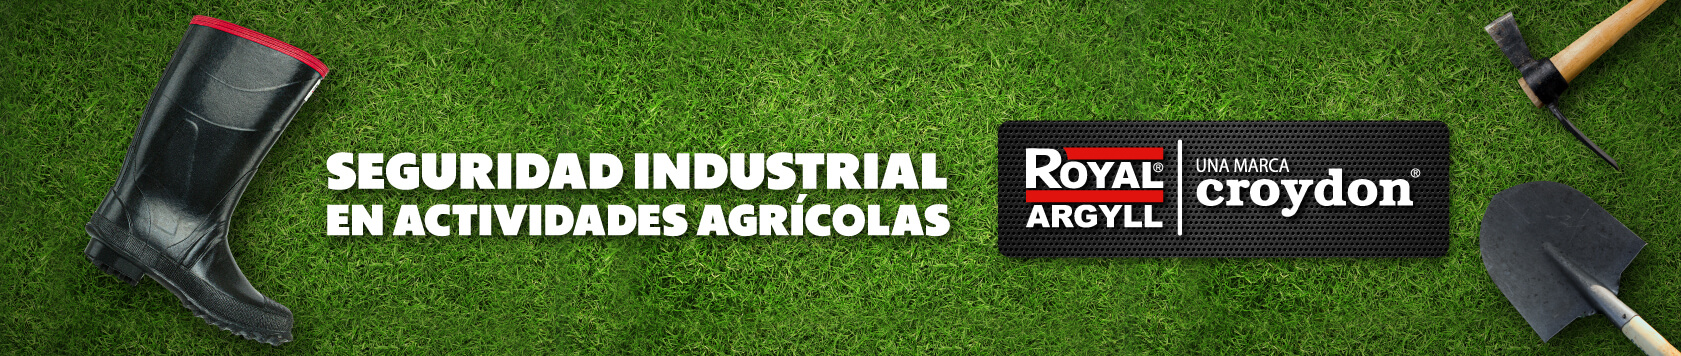 Botas de seguridad industrial ¿cómo usarlas en actividades agrícolas?